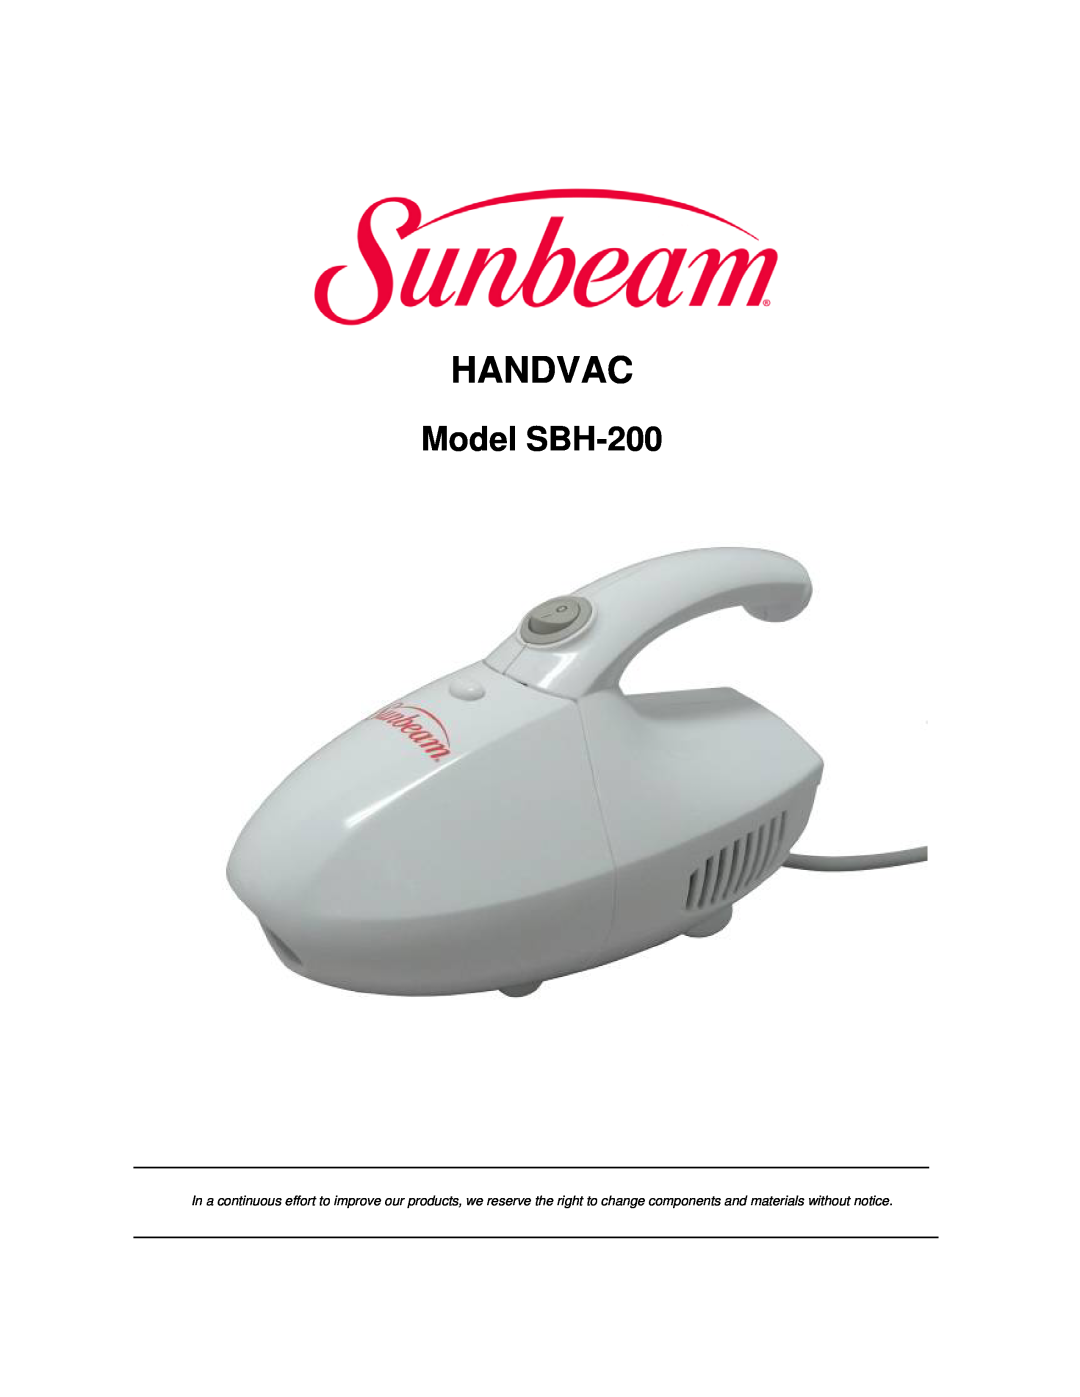 Sunbeam manual Handvac, Model SBH-200 